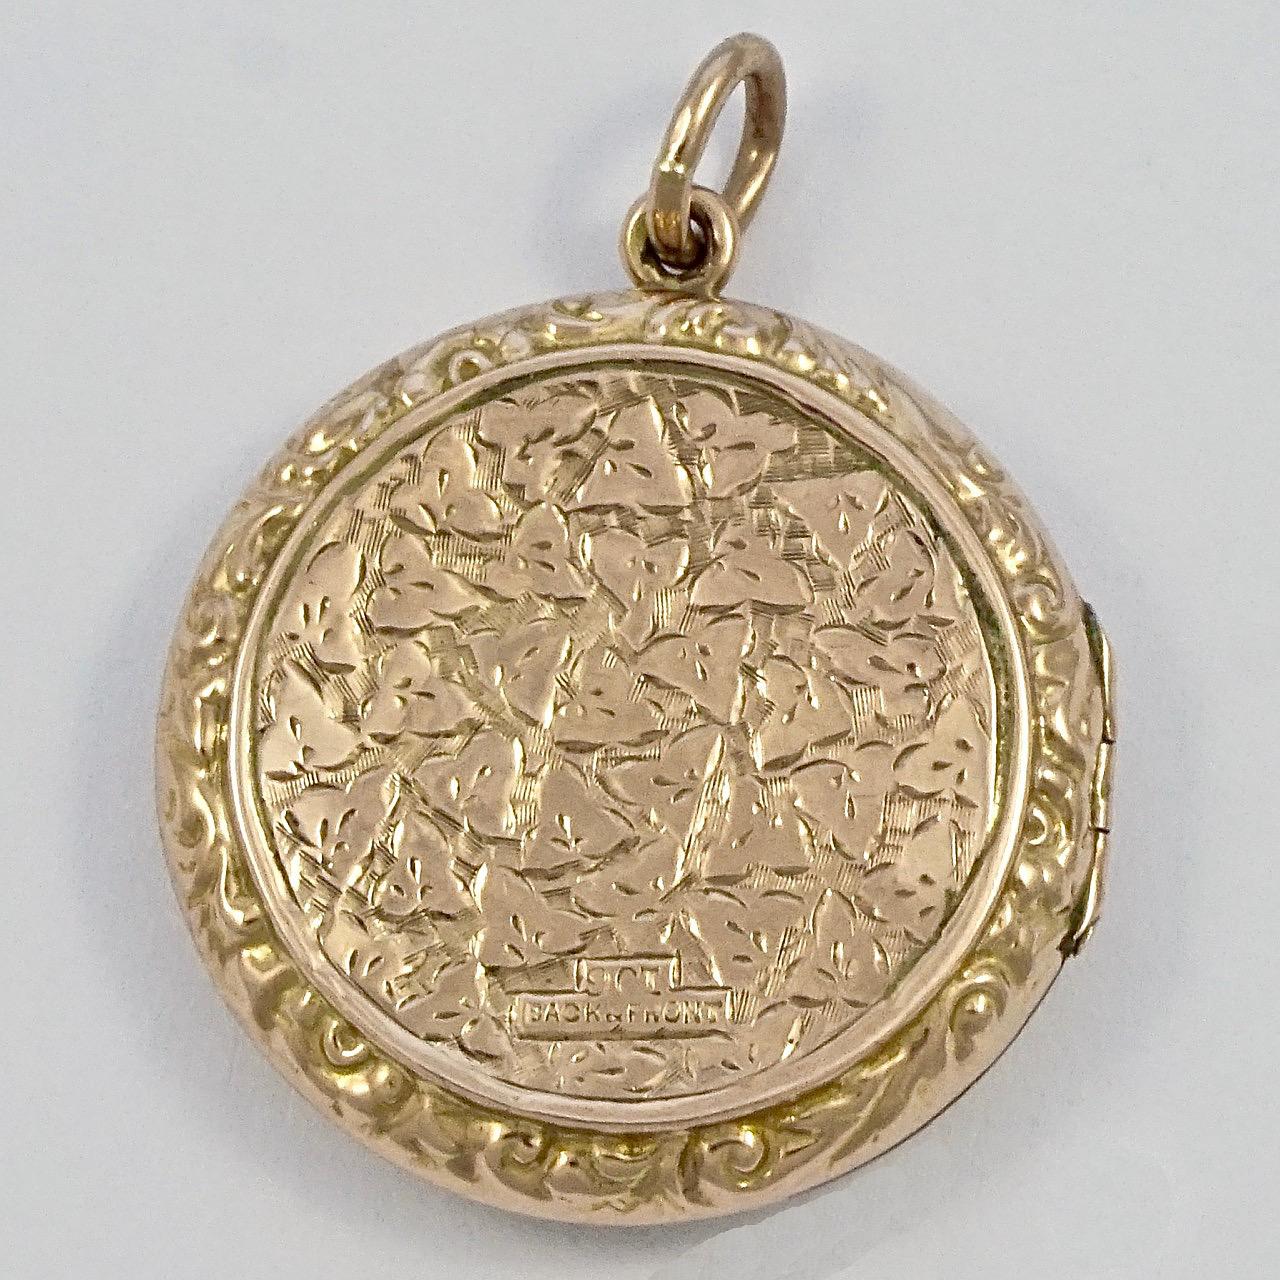 Schöne antike viktorianische 9ct Gold zurück und vor Medaillon mit einem Schild Kartusche, und mit eingravierten Efeublättern, und ein Blatt scroll Design Einfassung. Das runde Medaillon misst einen Durchmesser von 2,9 cm / 1,14 Zoll. Das Medaillon